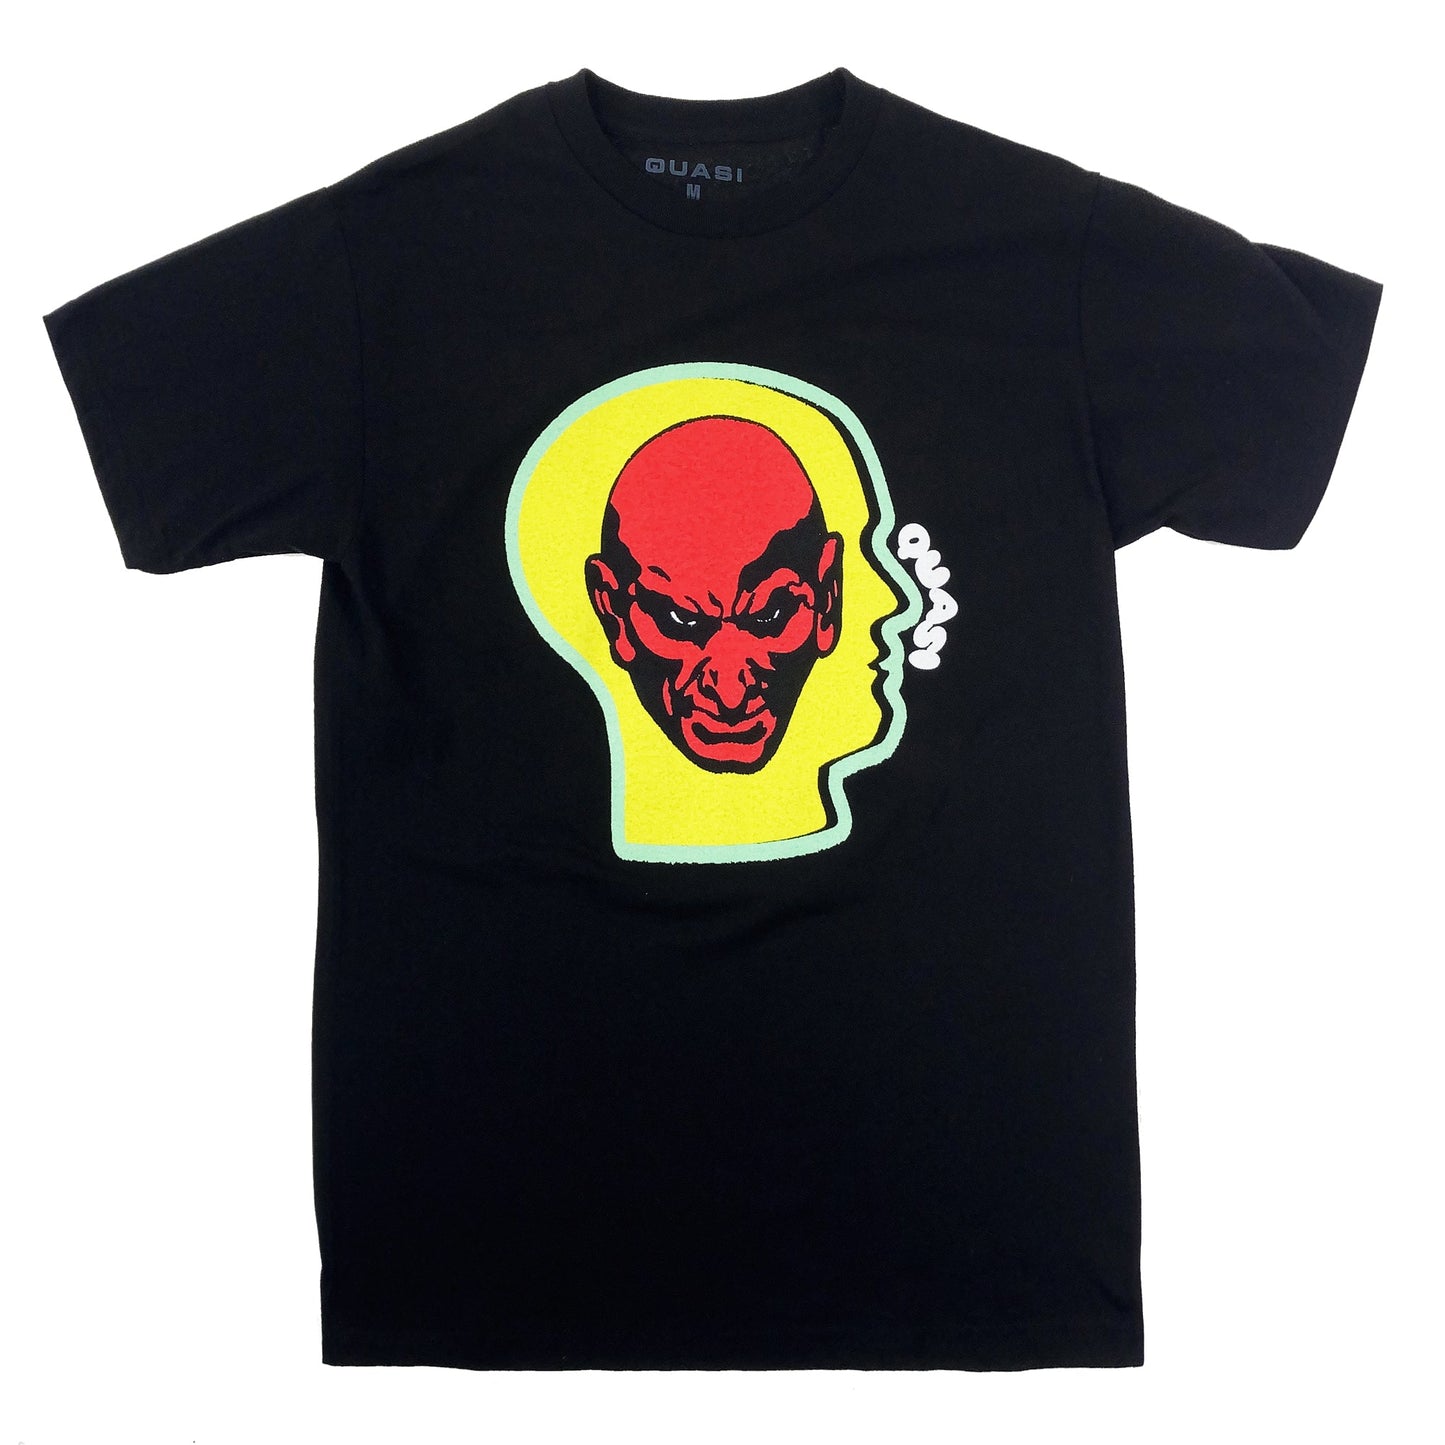 Quasi Heads T Shirt - Black - Prime Delux Store